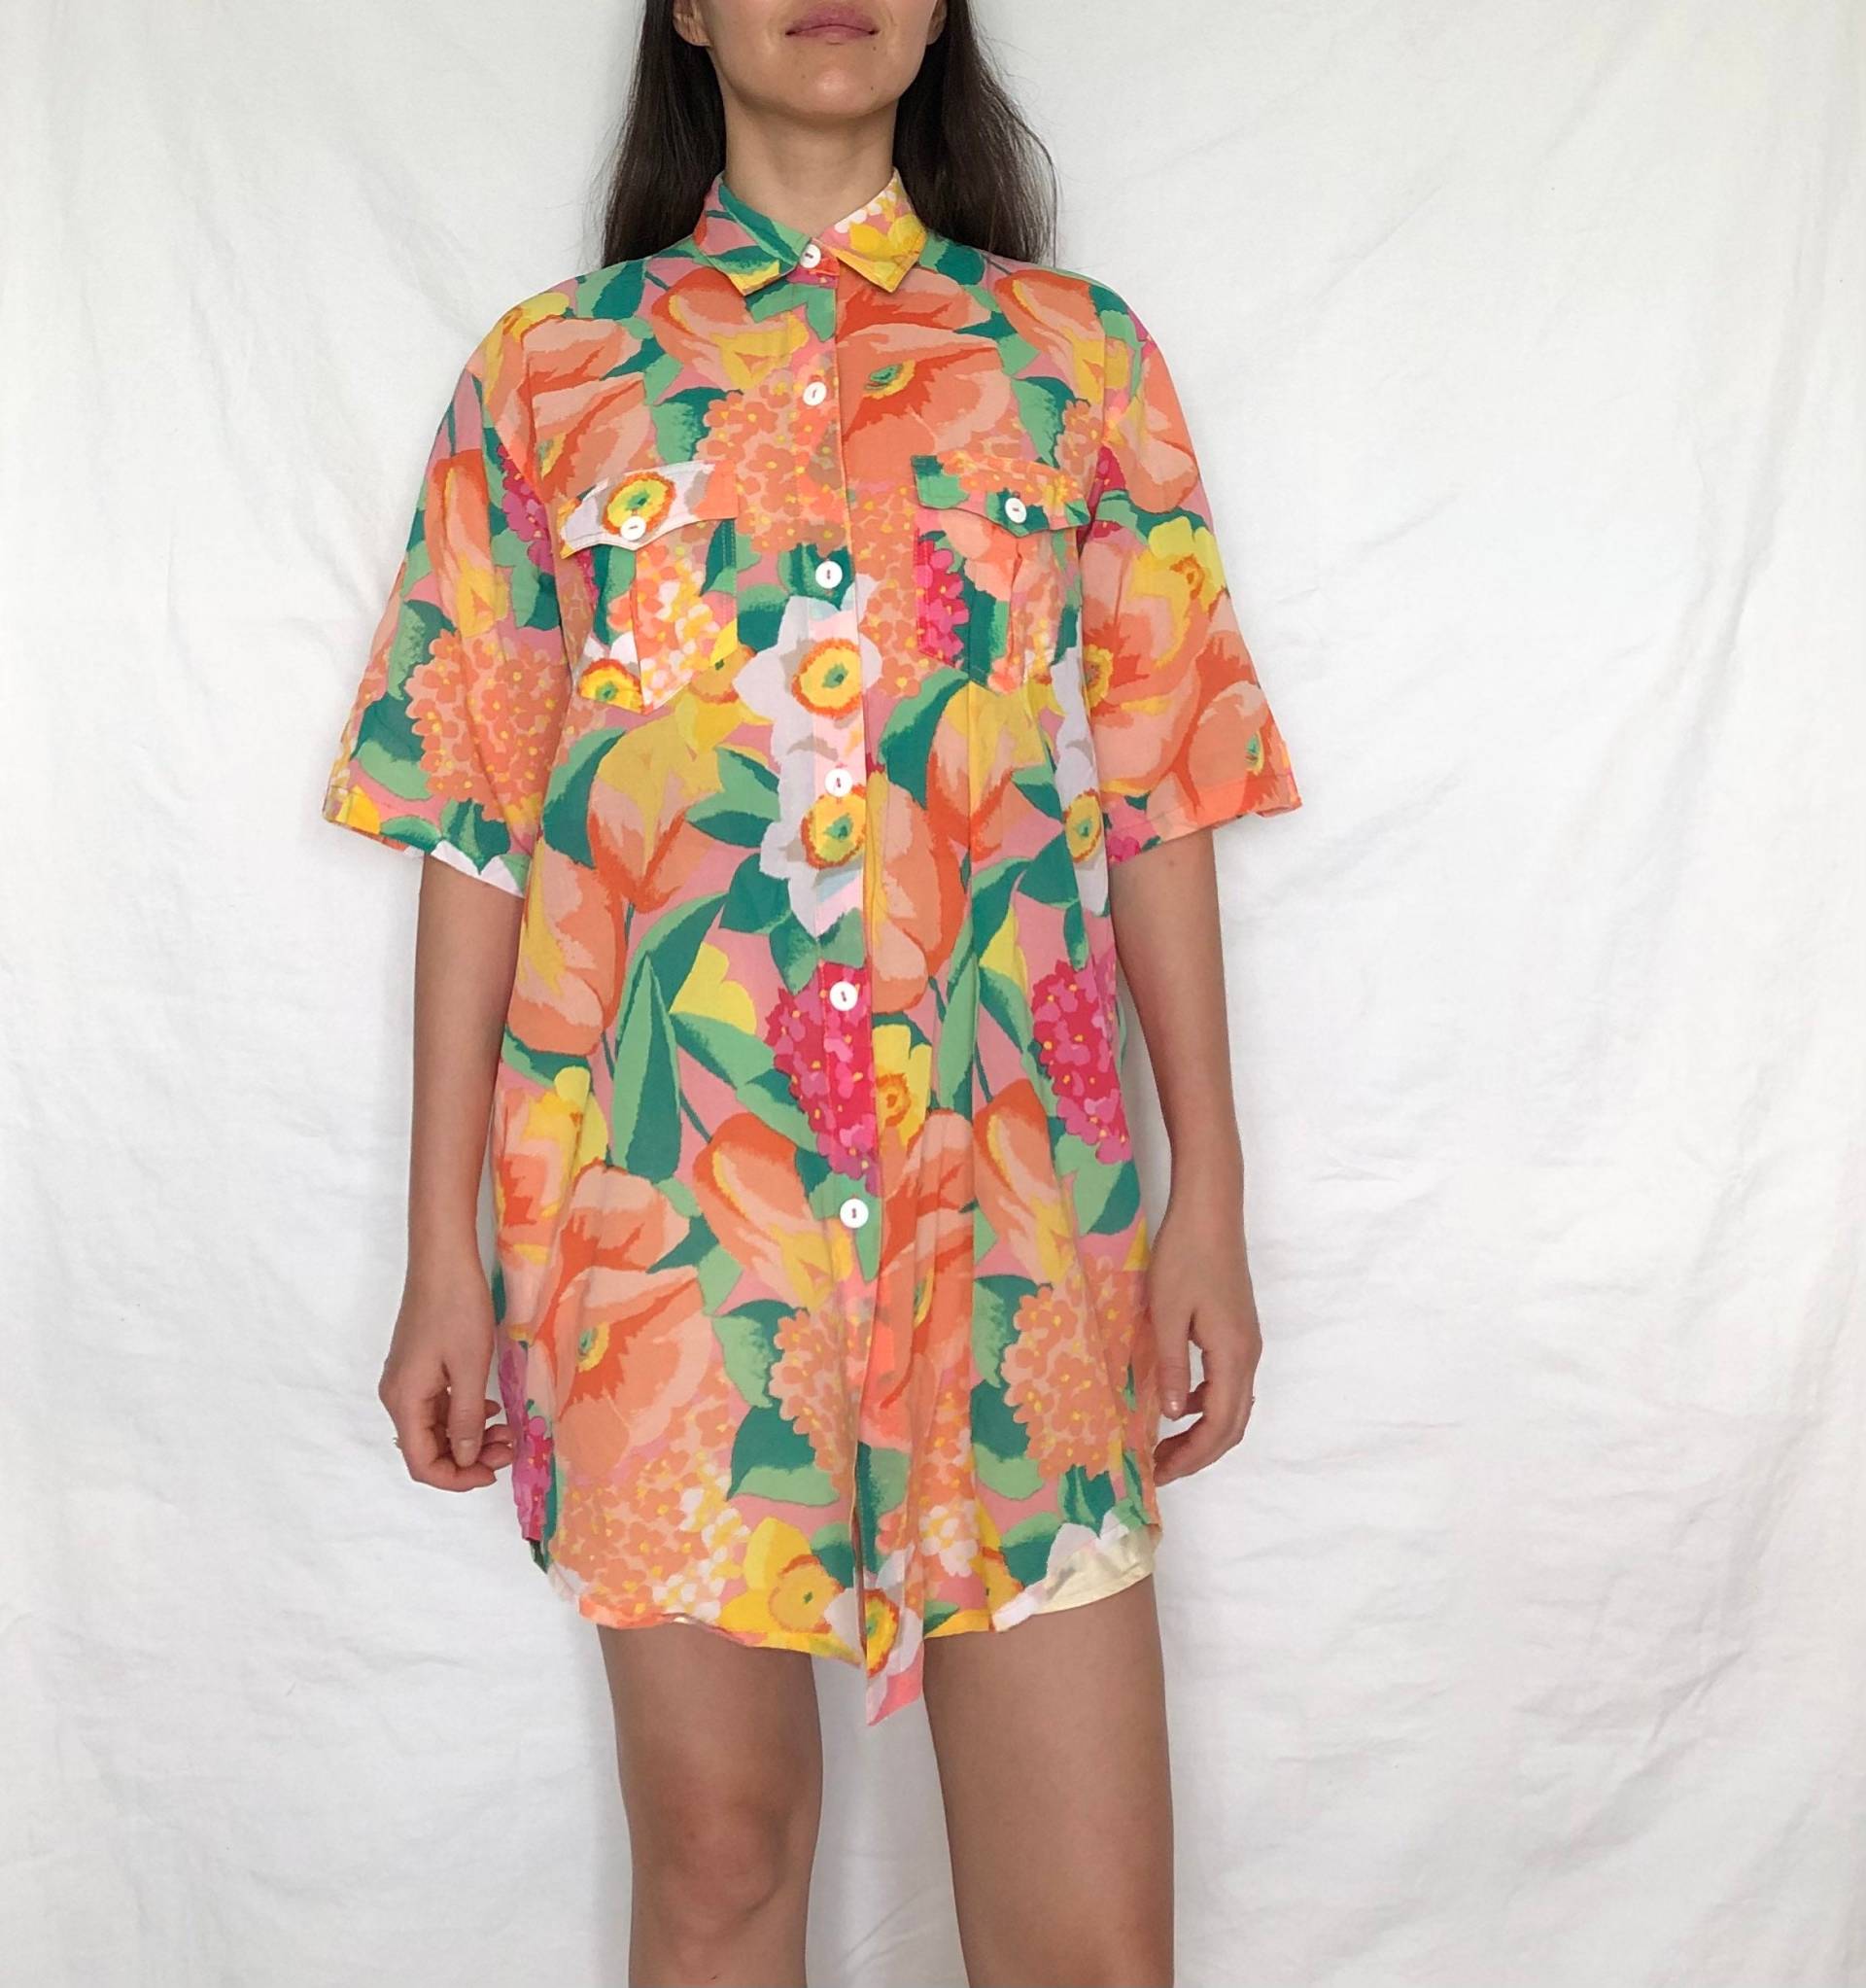 Vintage Crazy Pattern Shirt Kleid Baumwolle Floral Print Feminine Bluse Gr. M-L von MothLabVintage